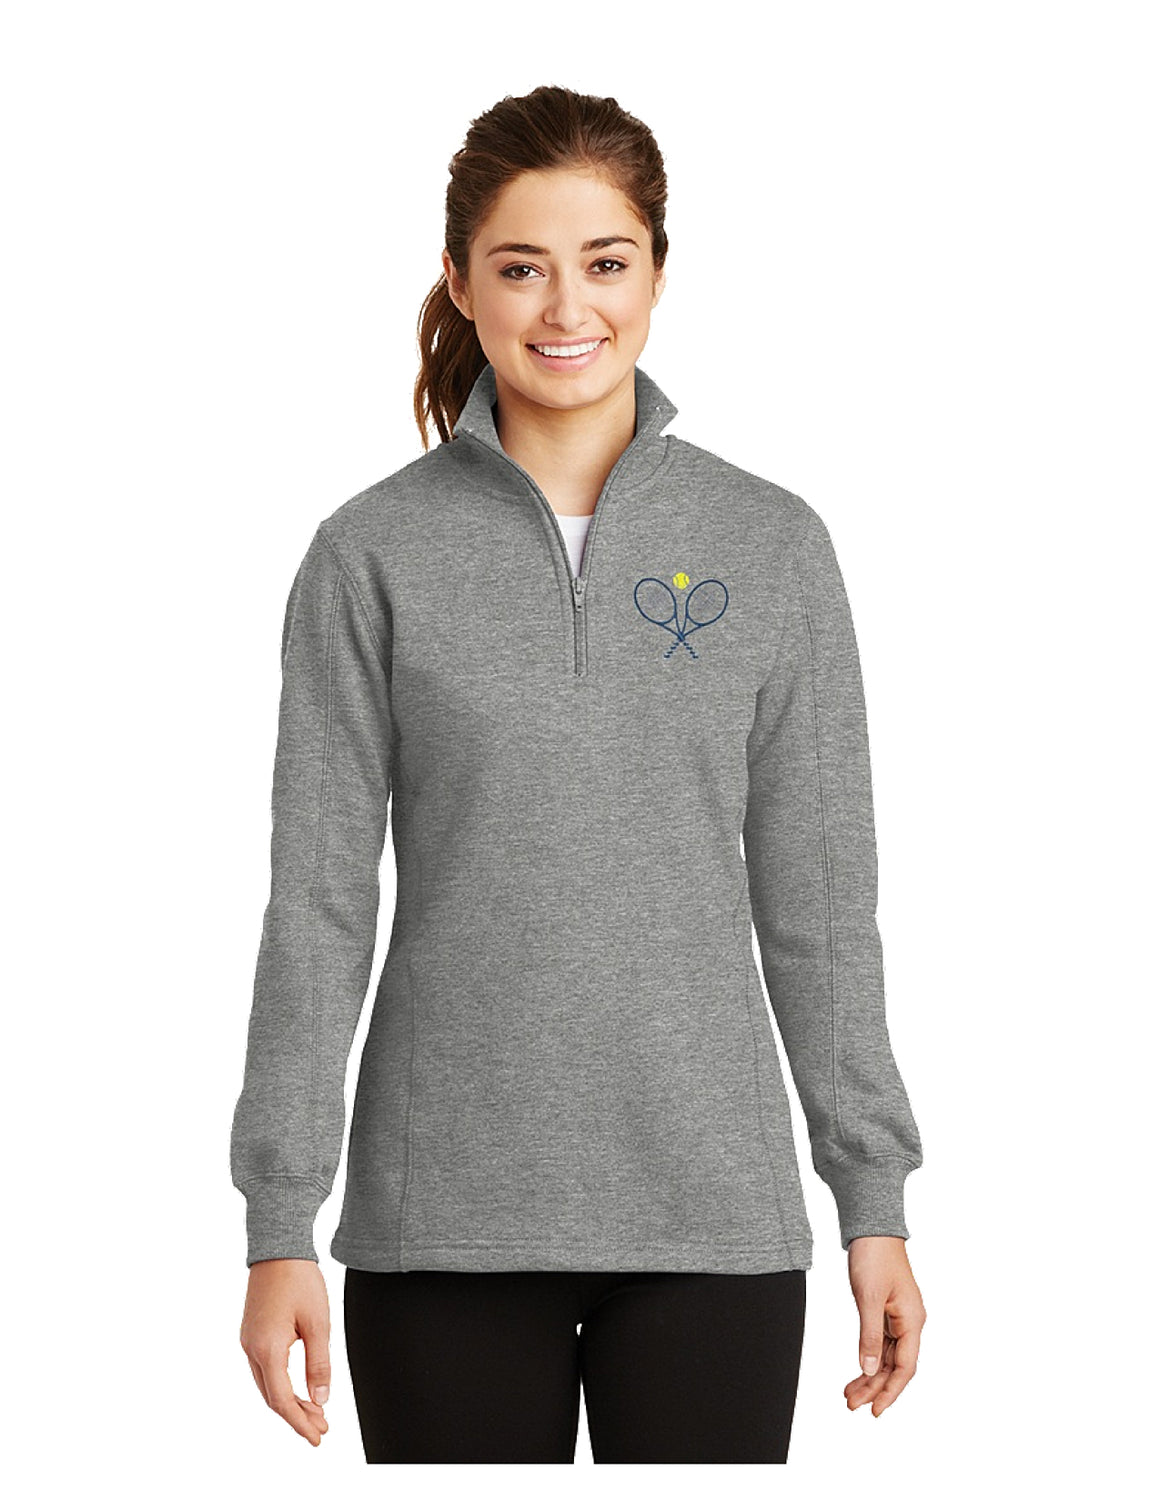 Tennis Quarter Zip Monogrammed Jacket Sweatshirt Pullover